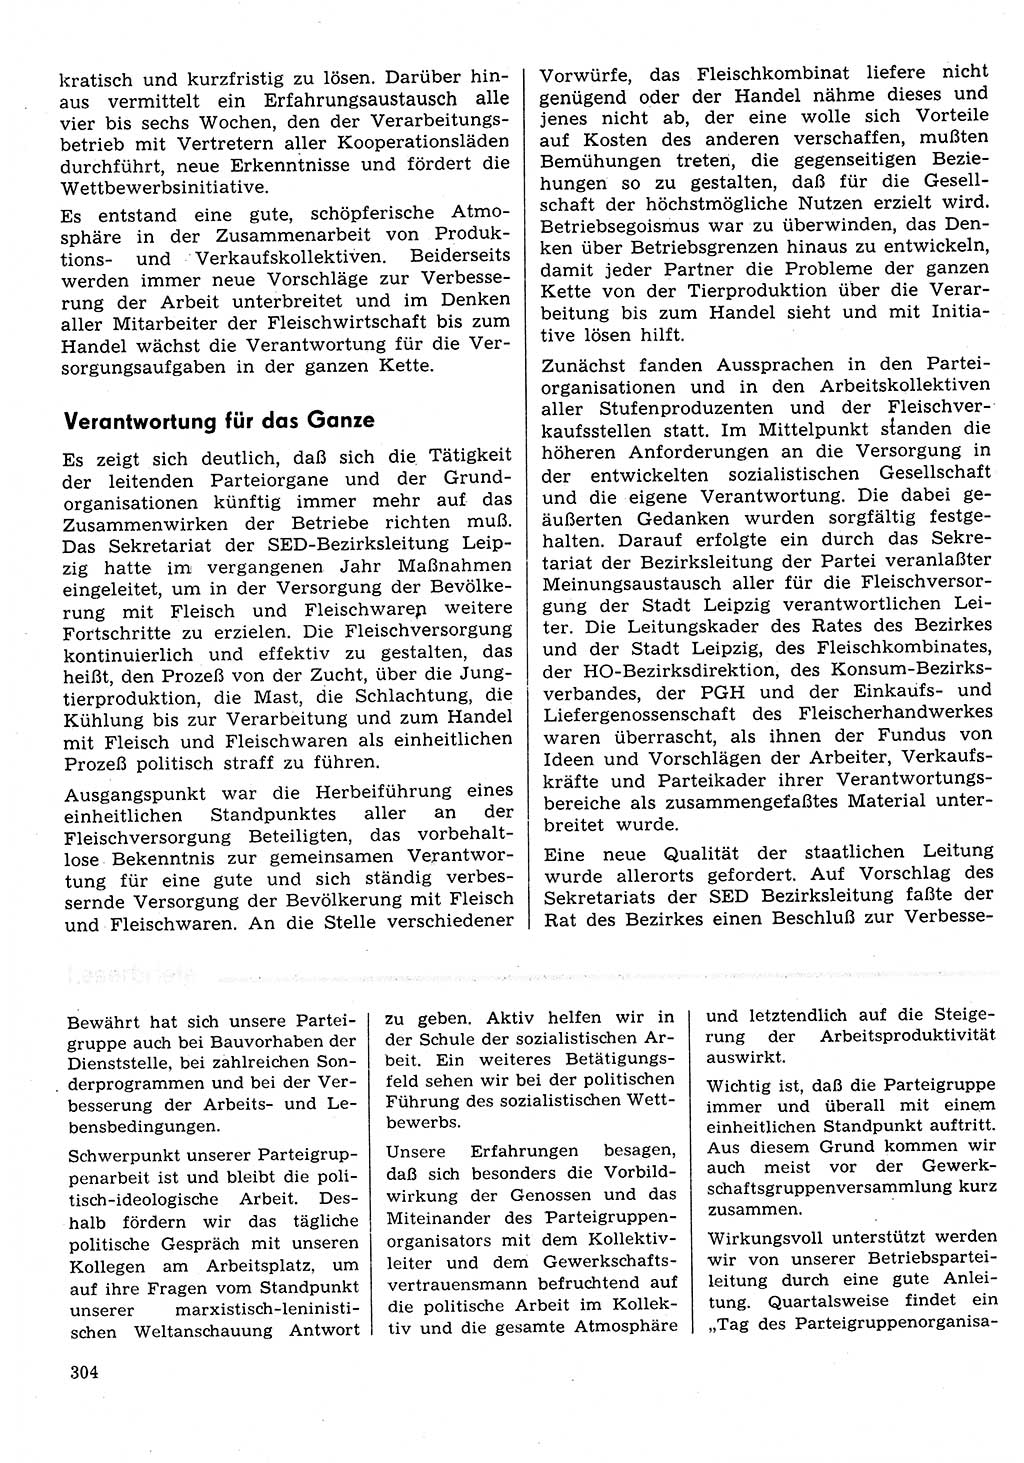 Neuer Weg (NW), Organ des Zentralkomitees (ZK) der SED (Sozialistische Einheitspartei Deutschlands) für Fragen des Parteilebens, 31. Jahrgang [Deutsche Demokratische Republik (DDR)] 1976, Seite 304 (NW ZK SED DDR 1976, S. 304)